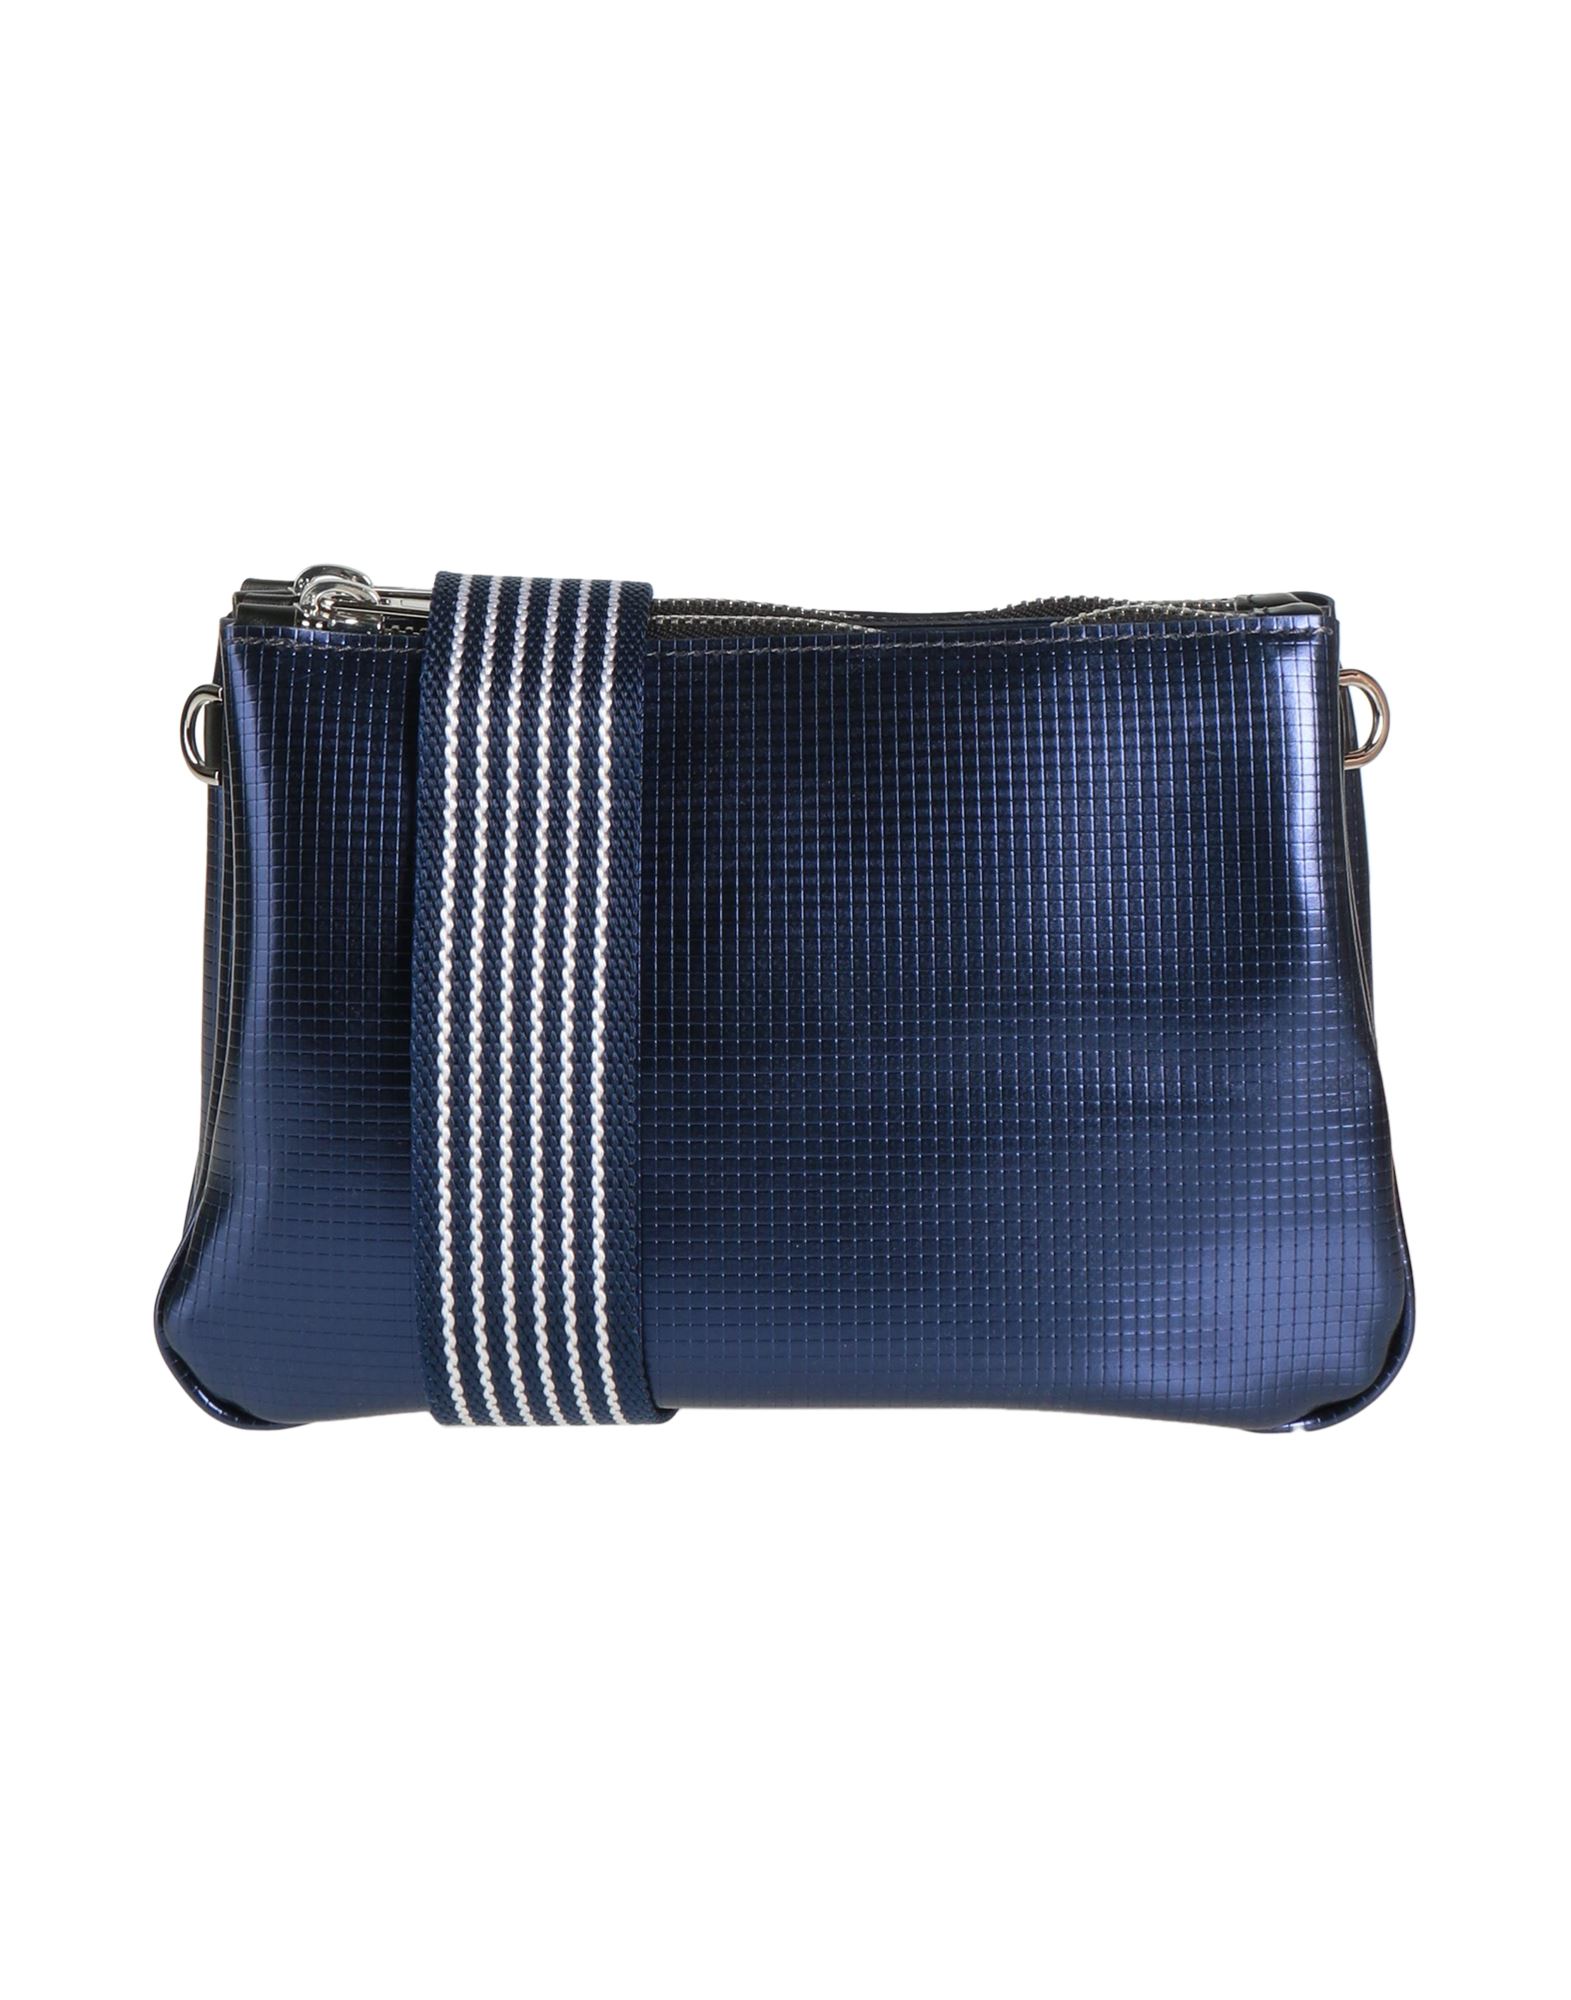 Gum Design Handbags In Blue